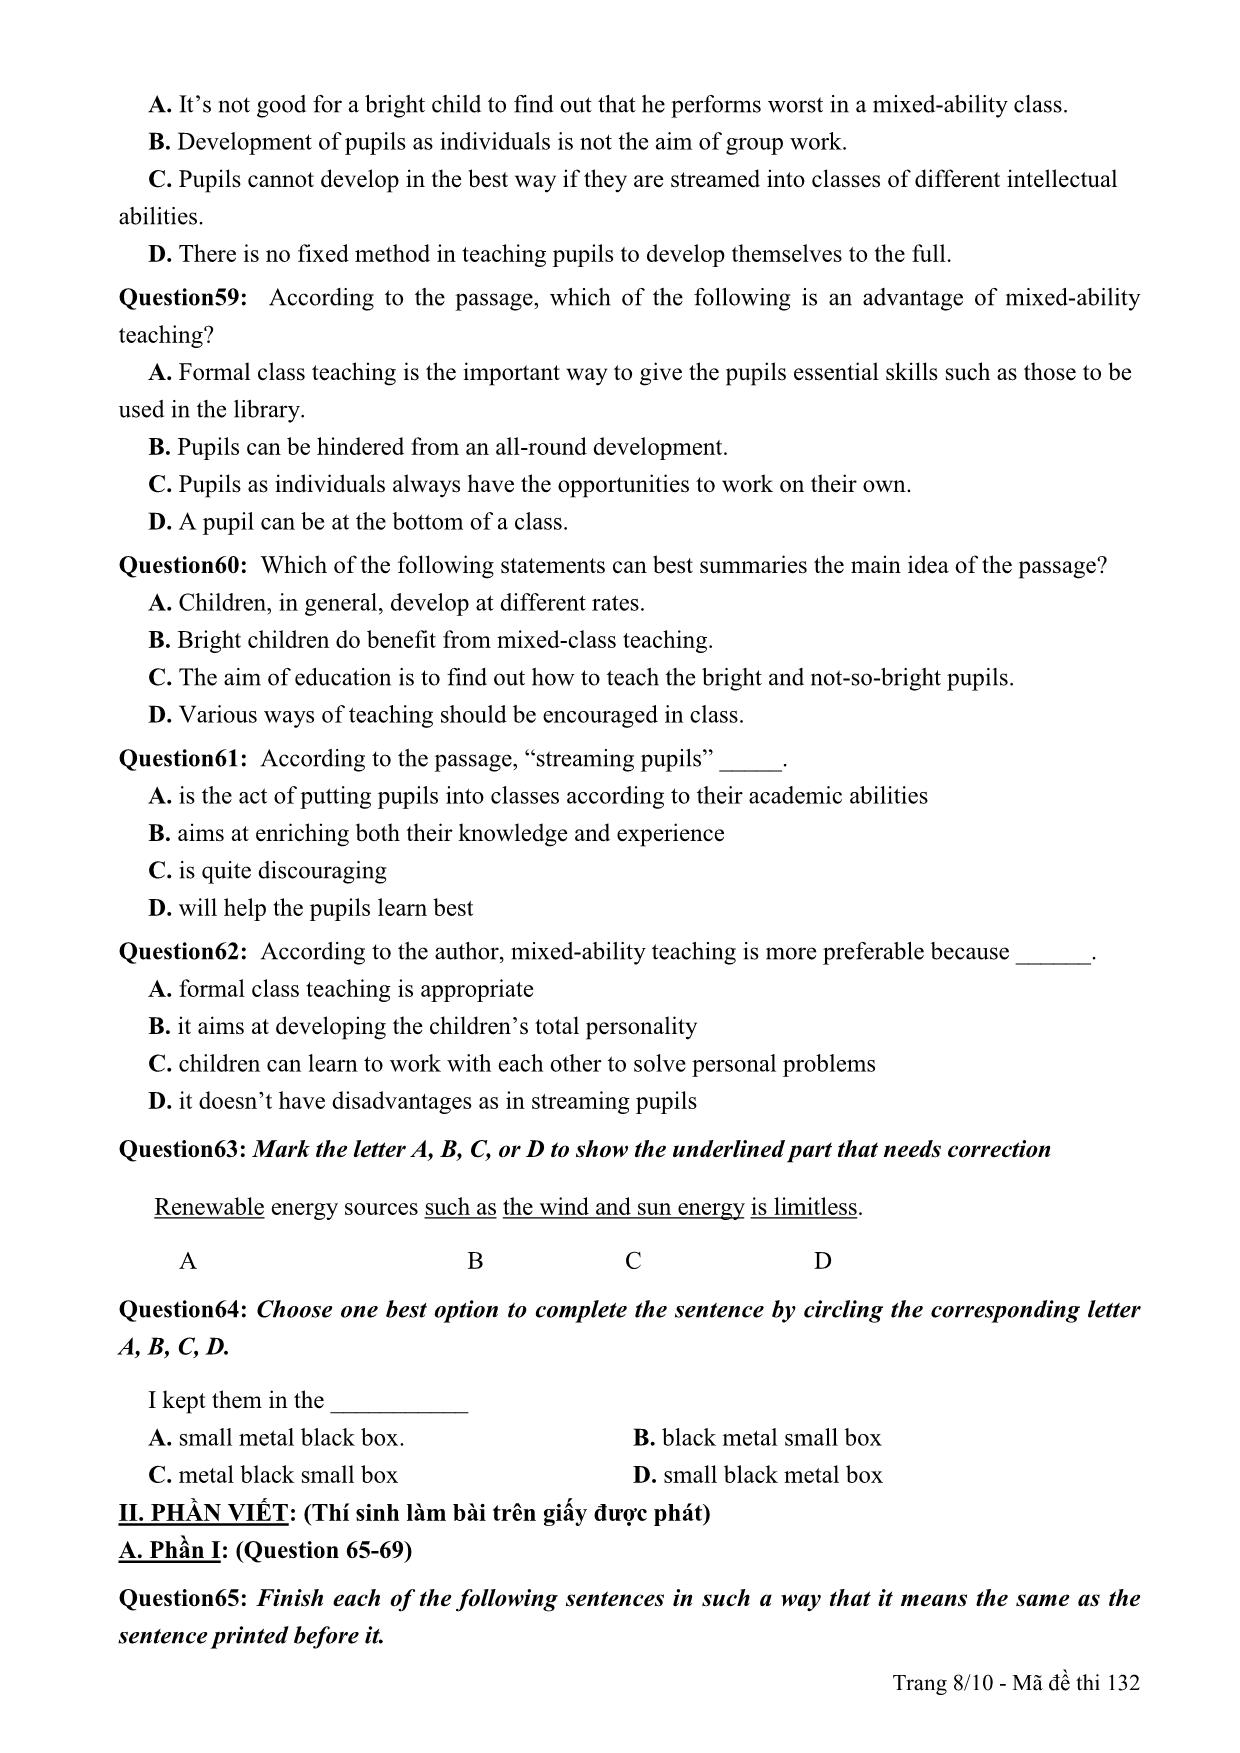 Đề thi thử THPT Quốc gia môn Tiếng Anh - Mã đề 132 - Năm học 2014-2015 - Trường THPT Lương Ngọc Quyến (Có đáp án) trang 8